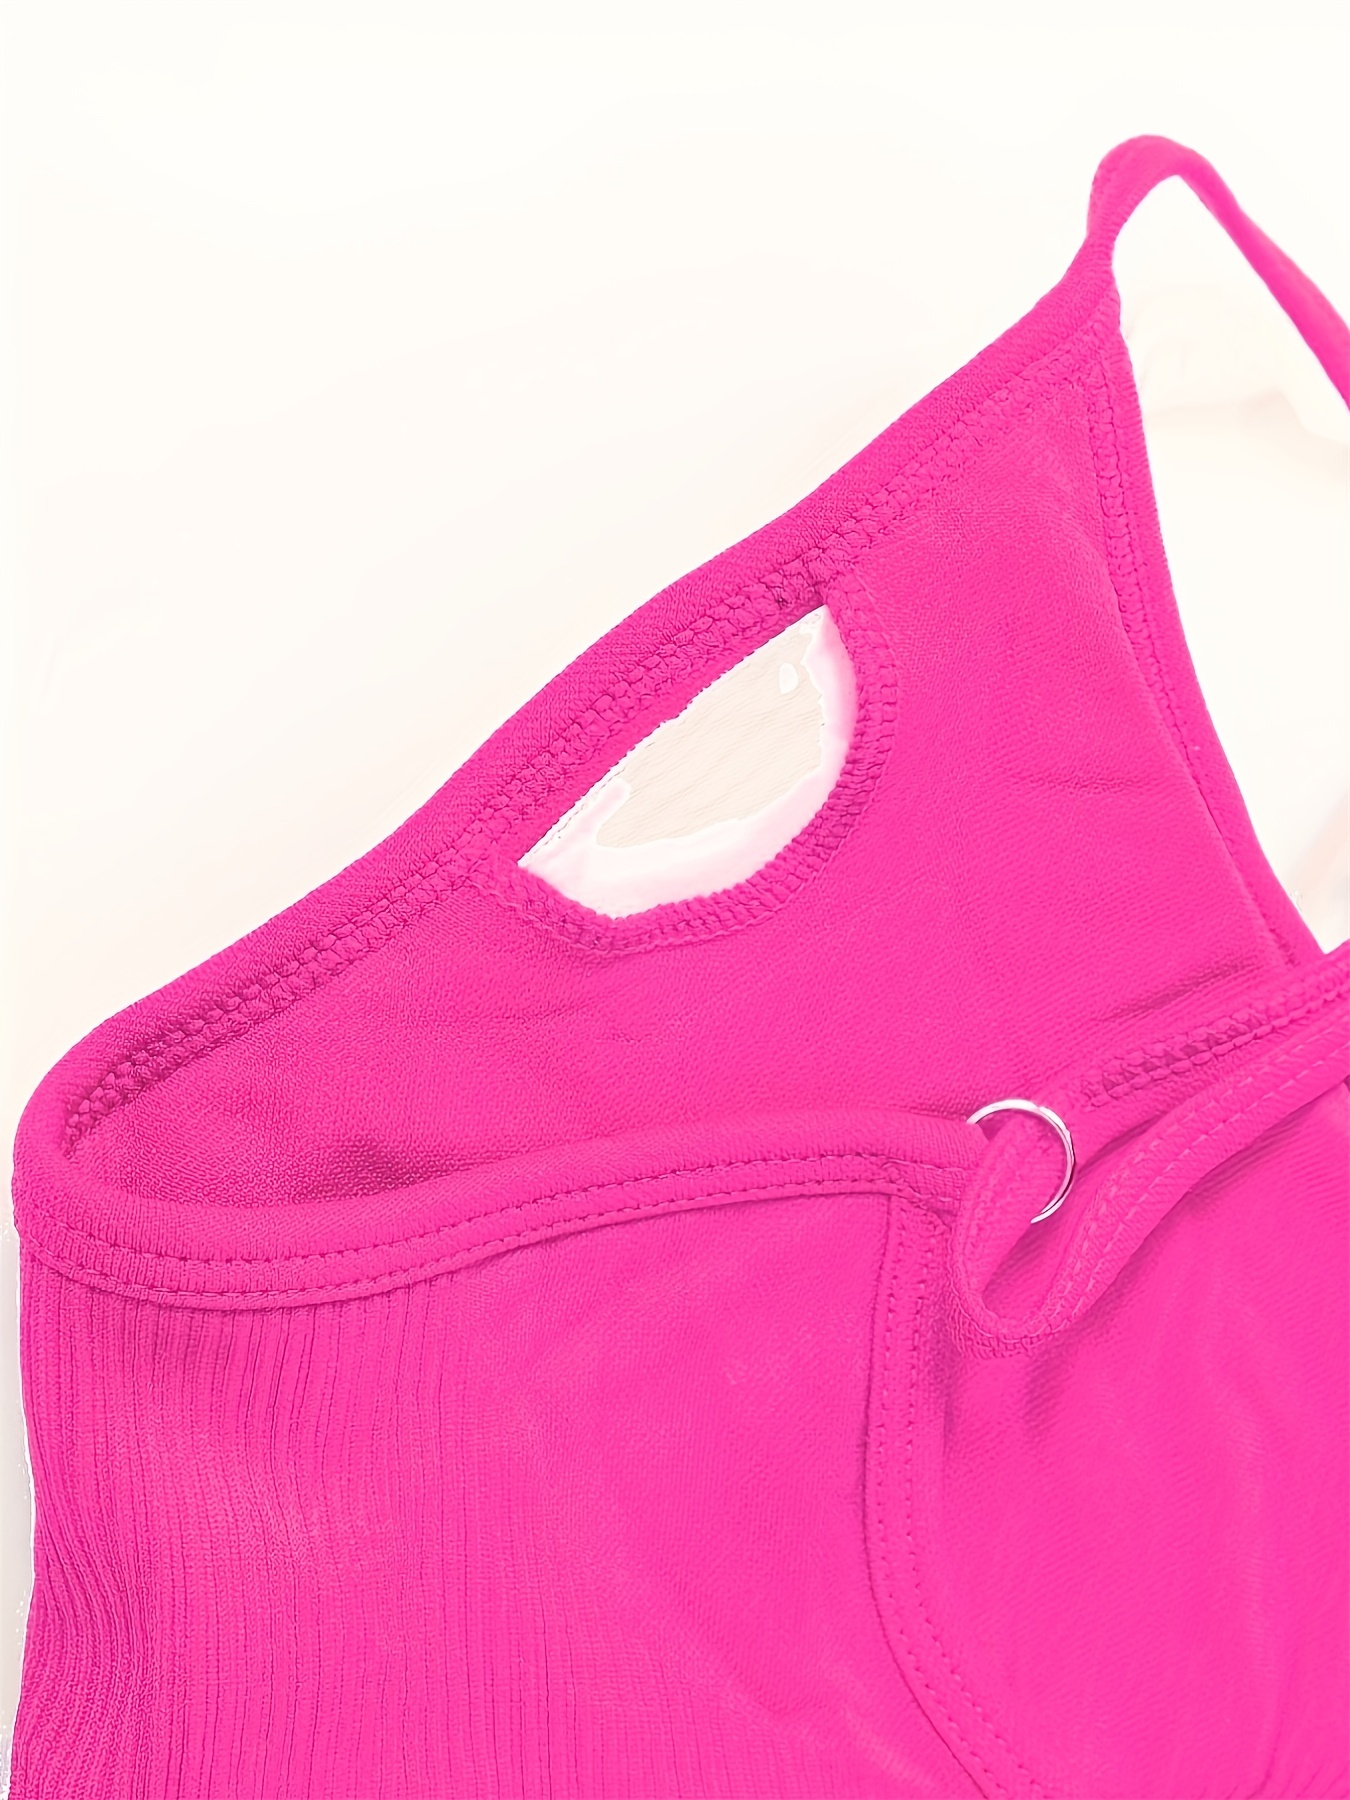 Eashery High Support Sports Bras for Women Women's True Body Lift Scoop  Neck Bra Pink 34